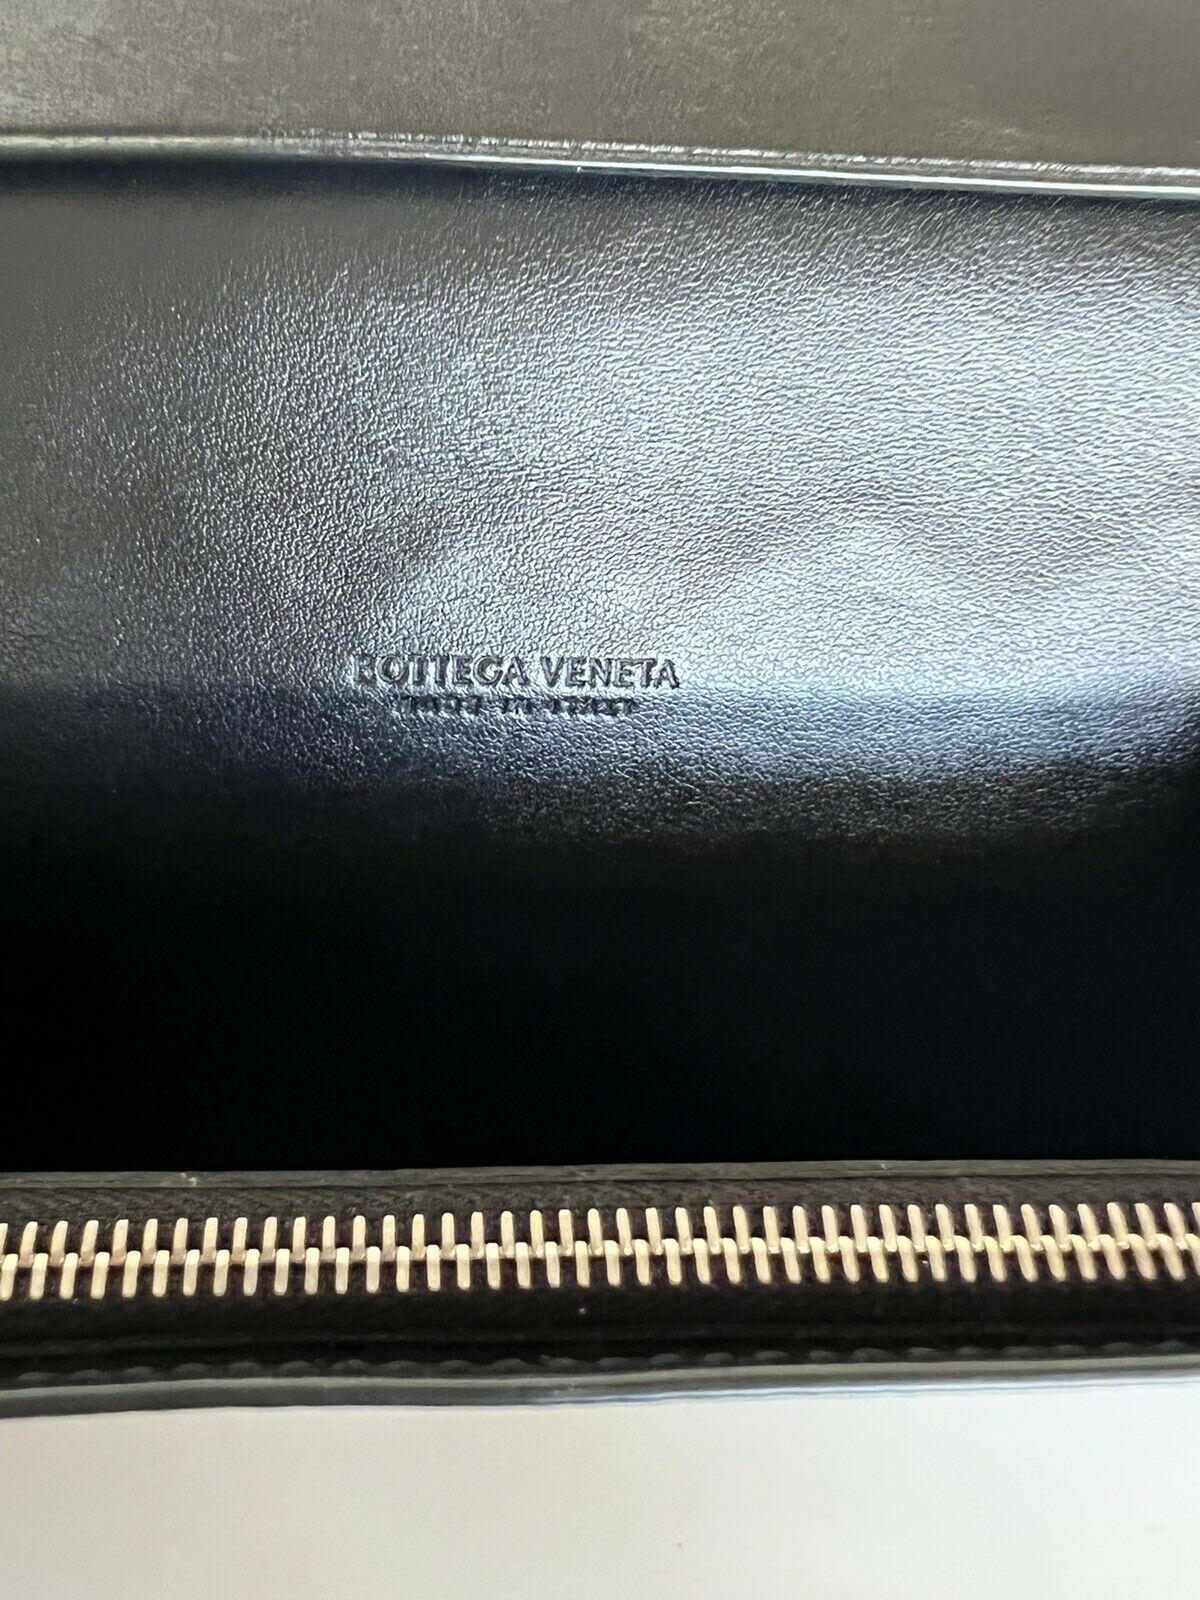 NWT $760 Bottega Veneta Nappa19 Кожаный кошелек для карт Черный 591365 Италия 